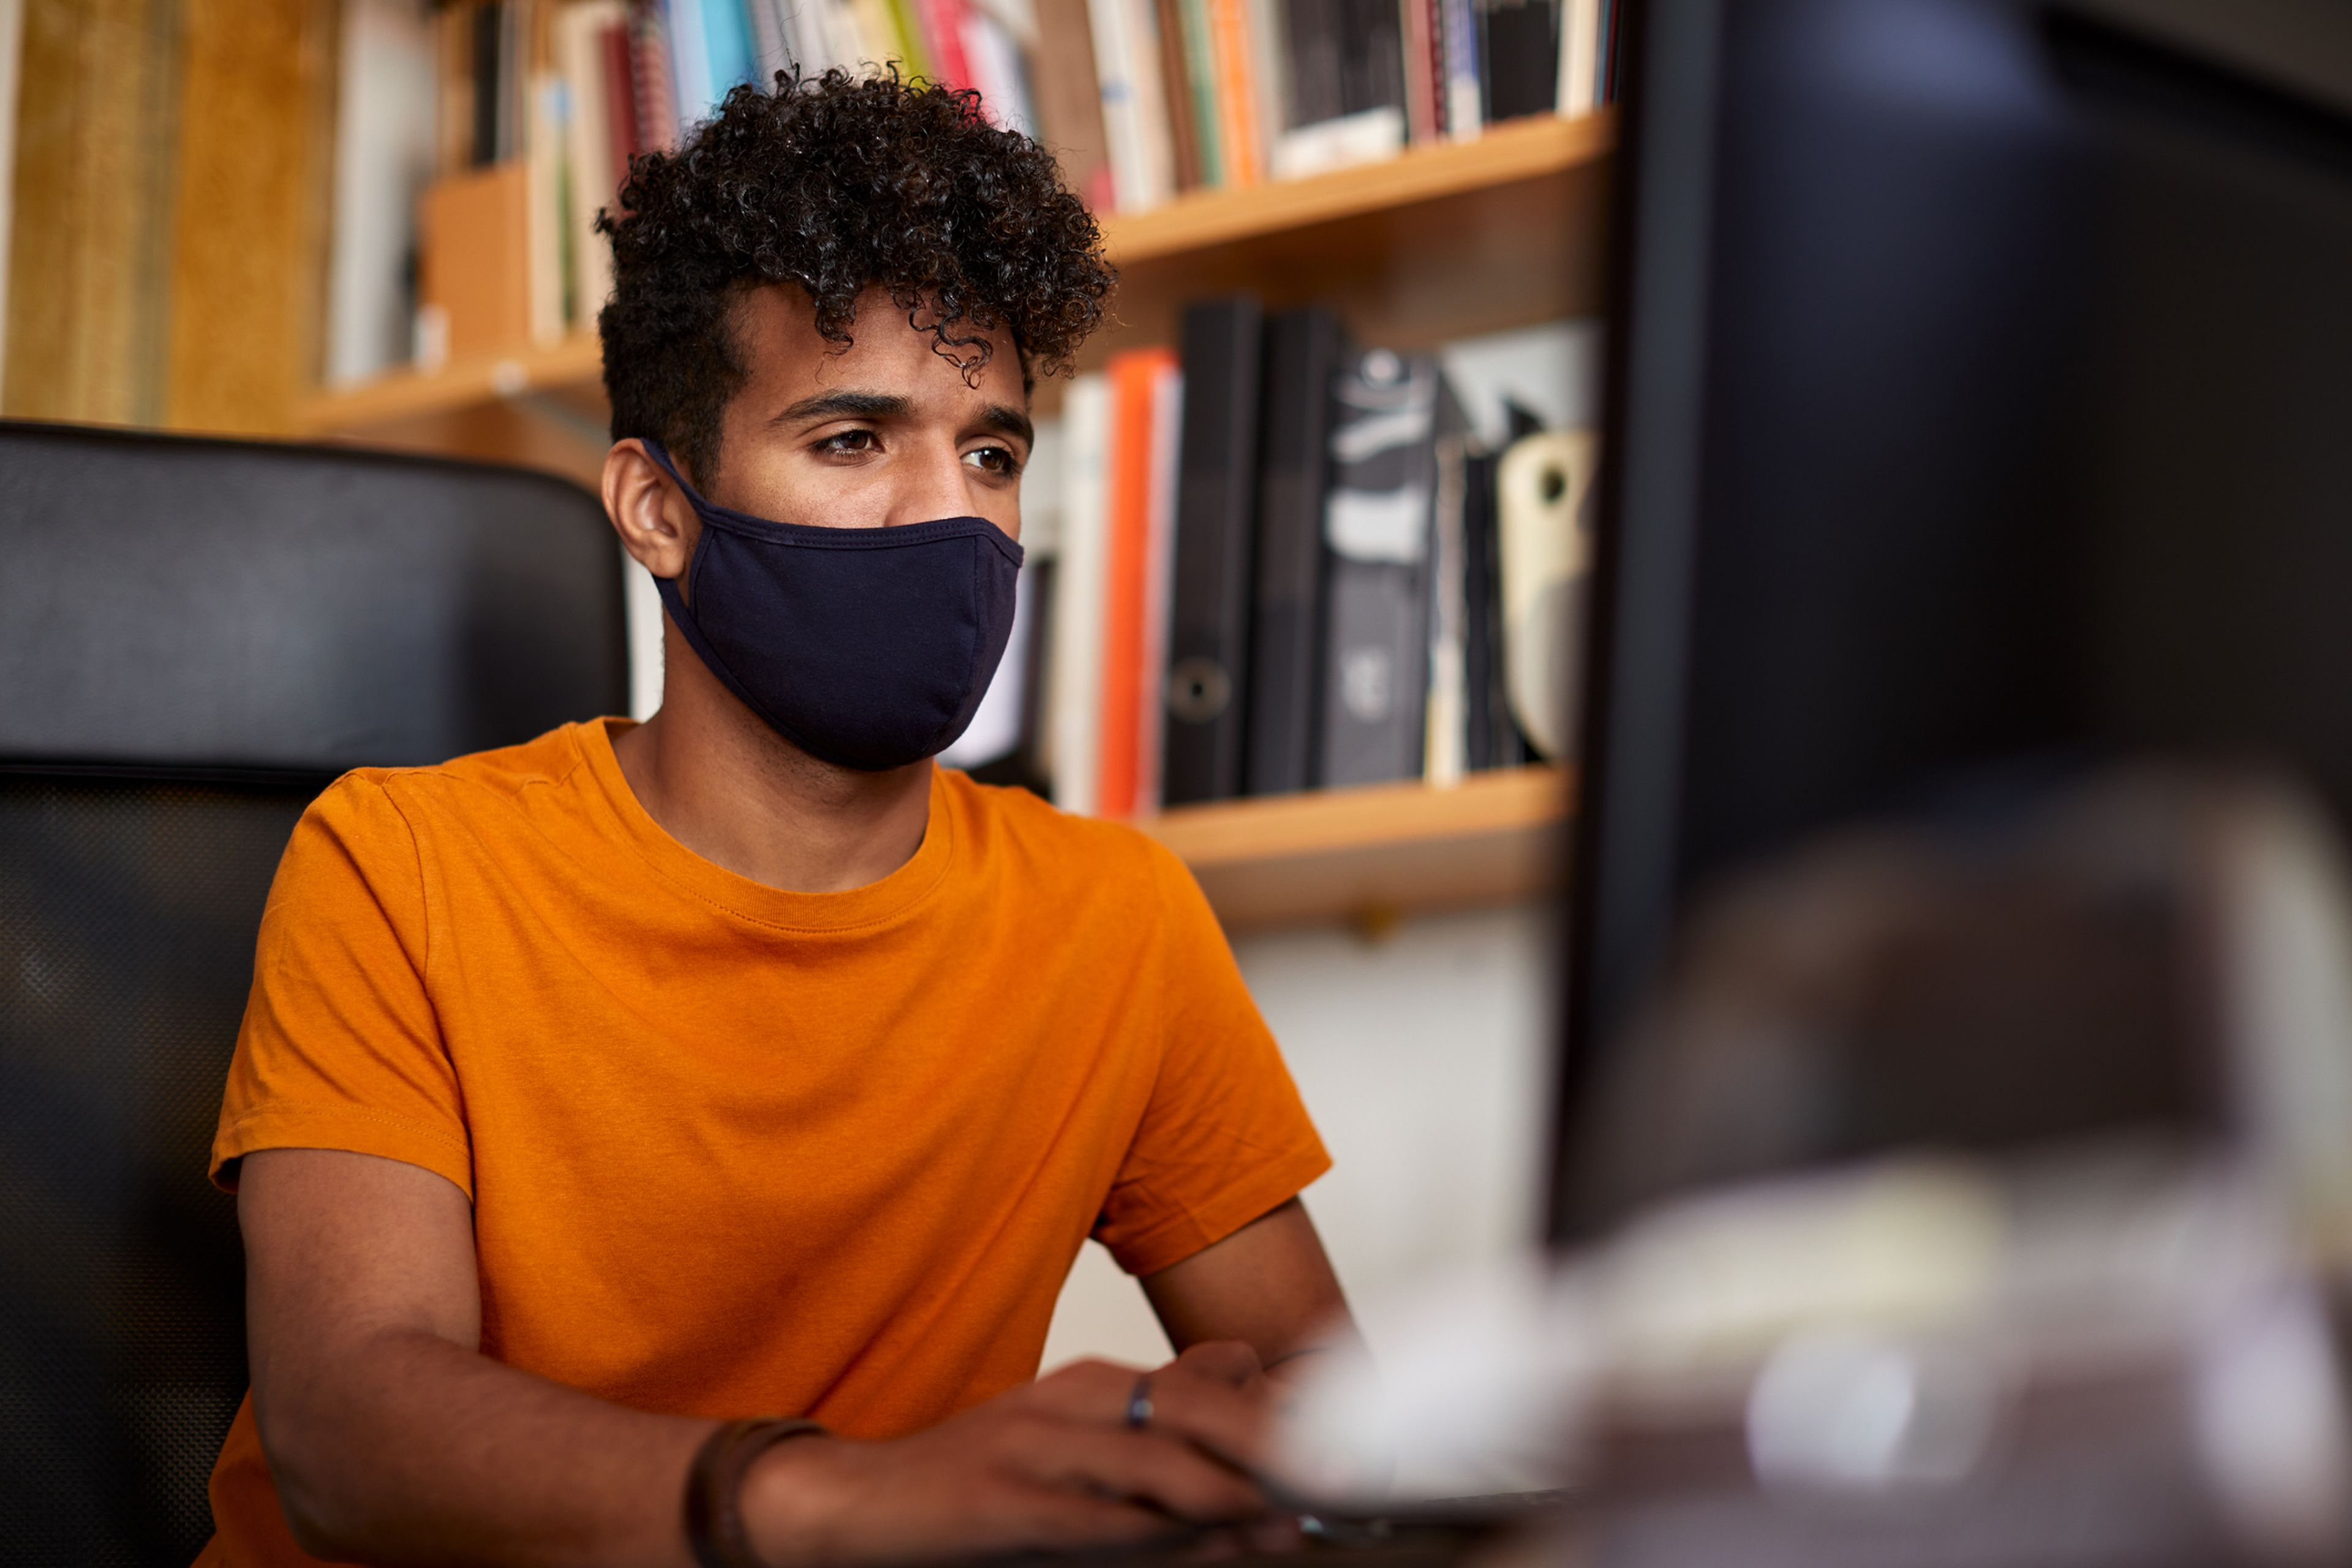 Un joven trabaja sentado frente a un ordenador con una mascarilla durante la pandemia del COVID-19